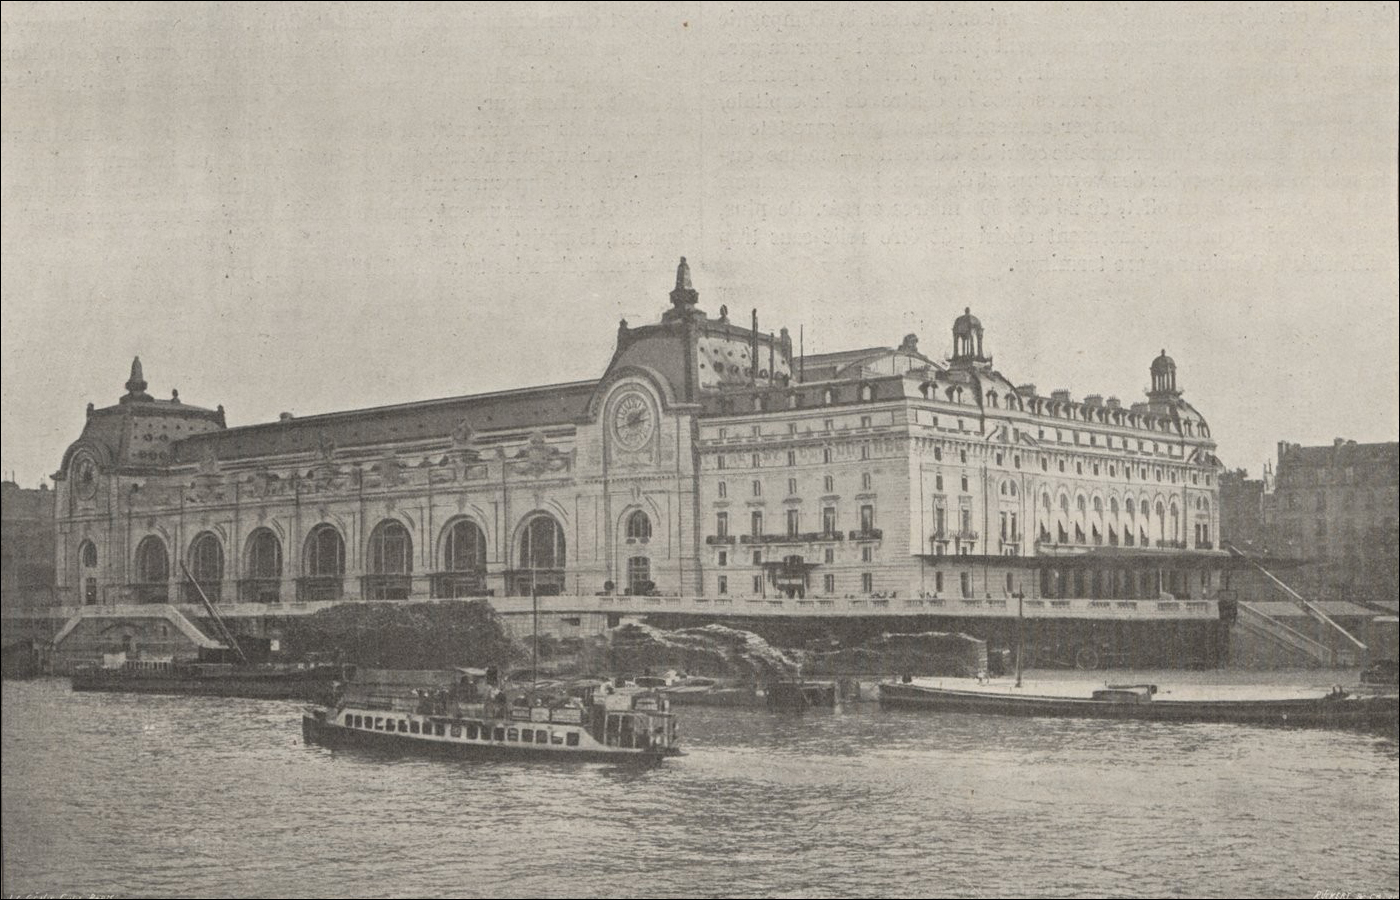 Az Orsay pályaudvar vadiúj állomásépülete a Szajna felől nézve. (Forrás: Le Génie civil: revue générale des industries françaises et étrangères, 23(1024), 201 p., 1902.)